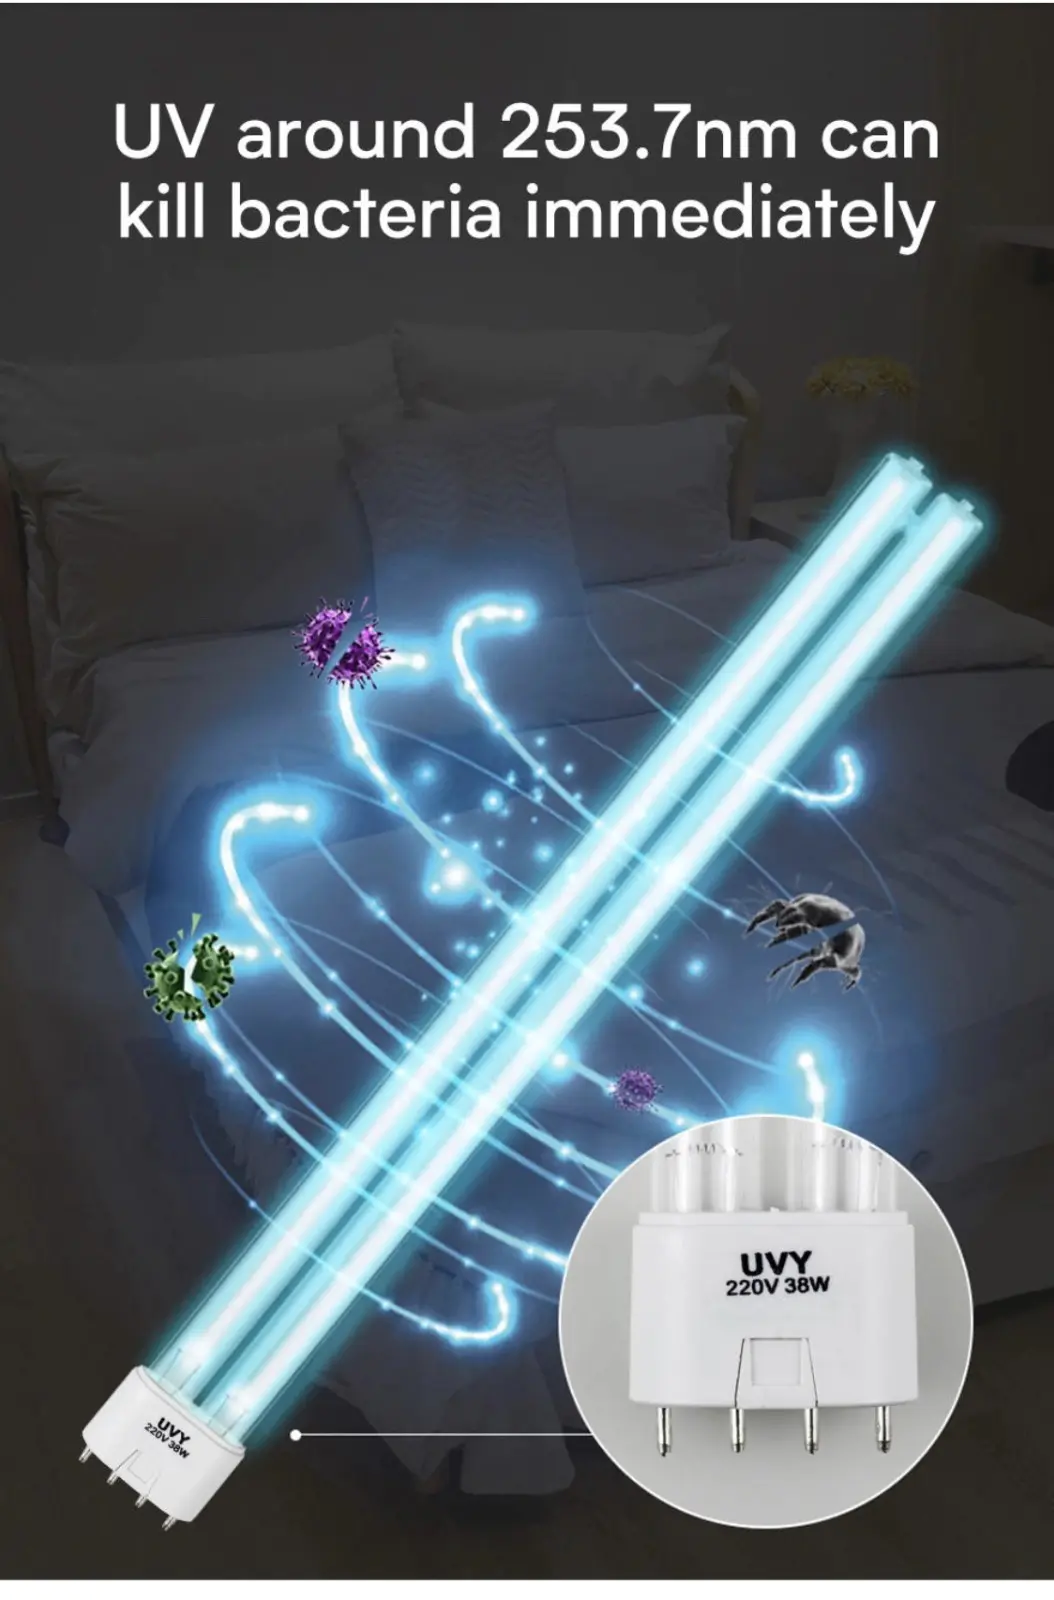 नसबंदी के लिए लिटेल प्रौद्योगिकी लोकप्रिय यूवी प्रकाश Sanitizer